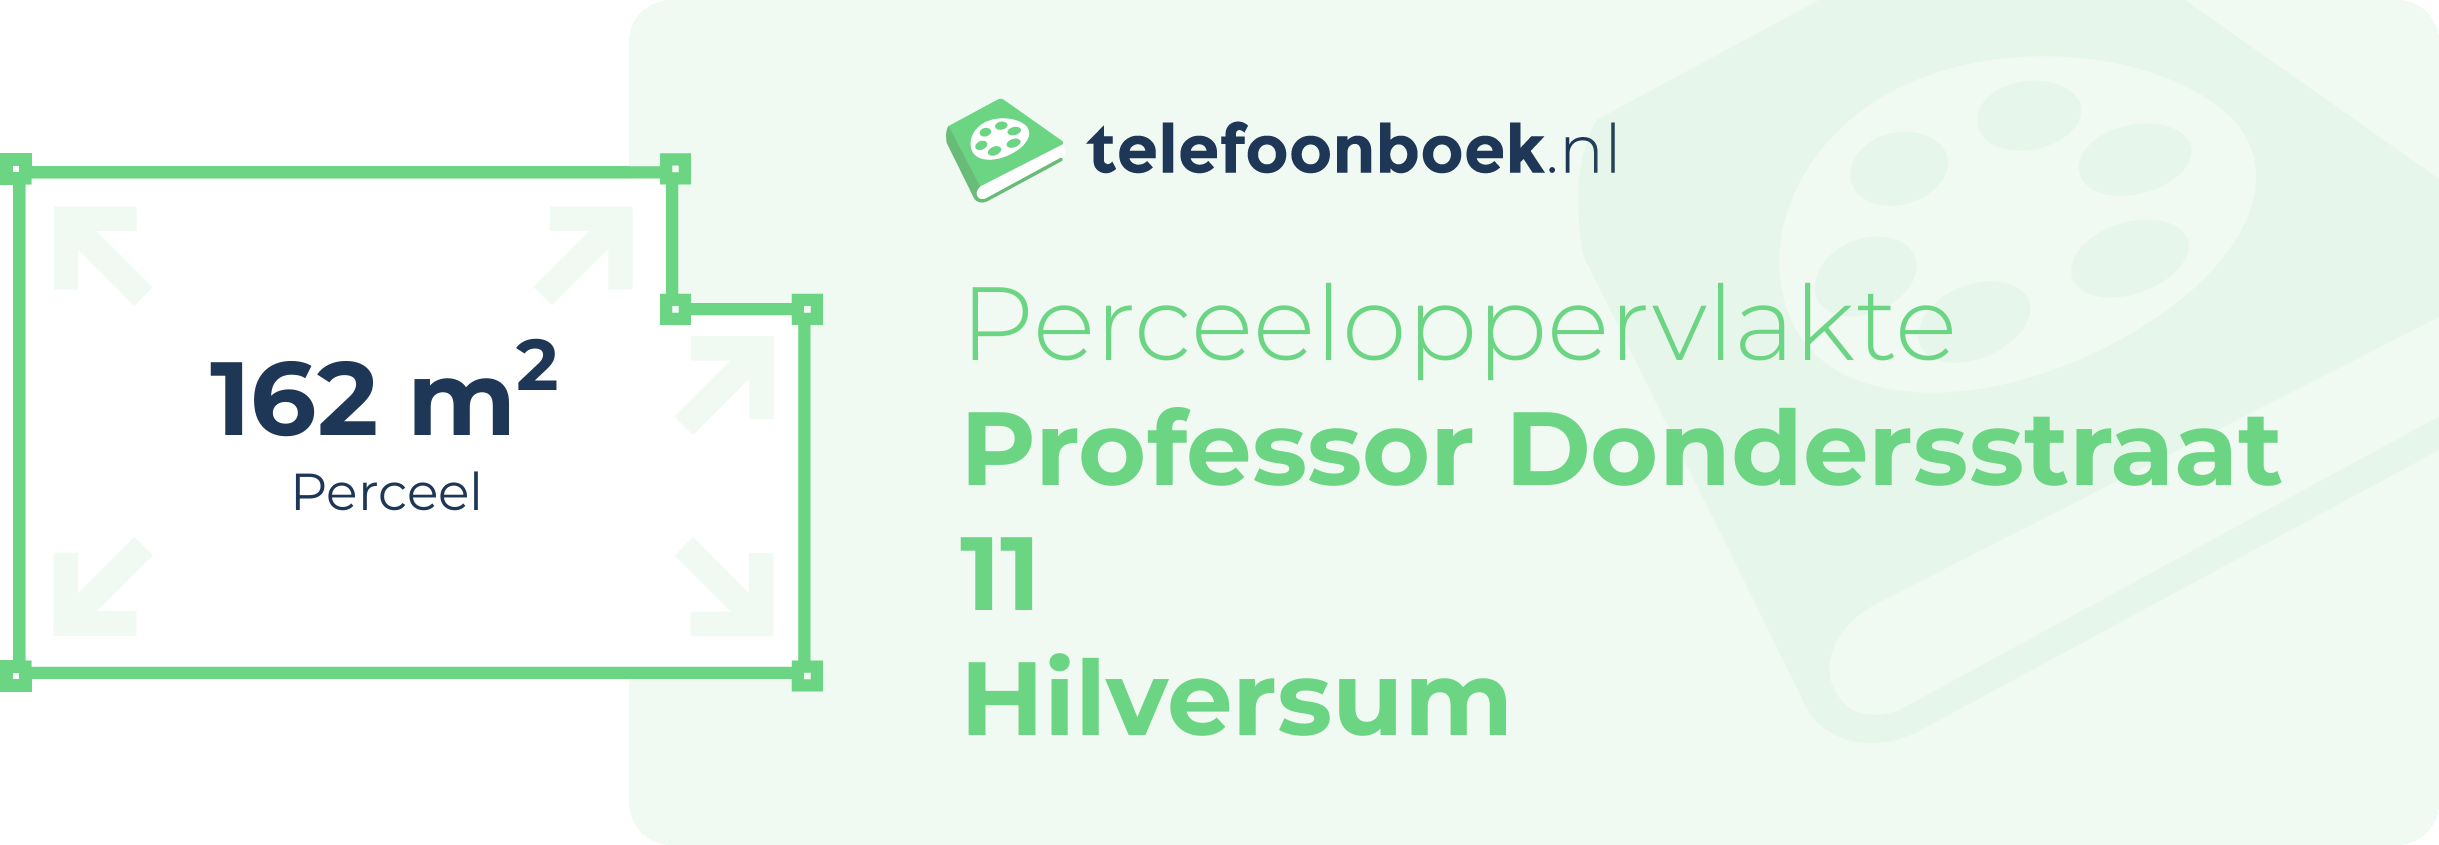 Perceeloppervlakte Professor Dondersstraat 11 Hilversum